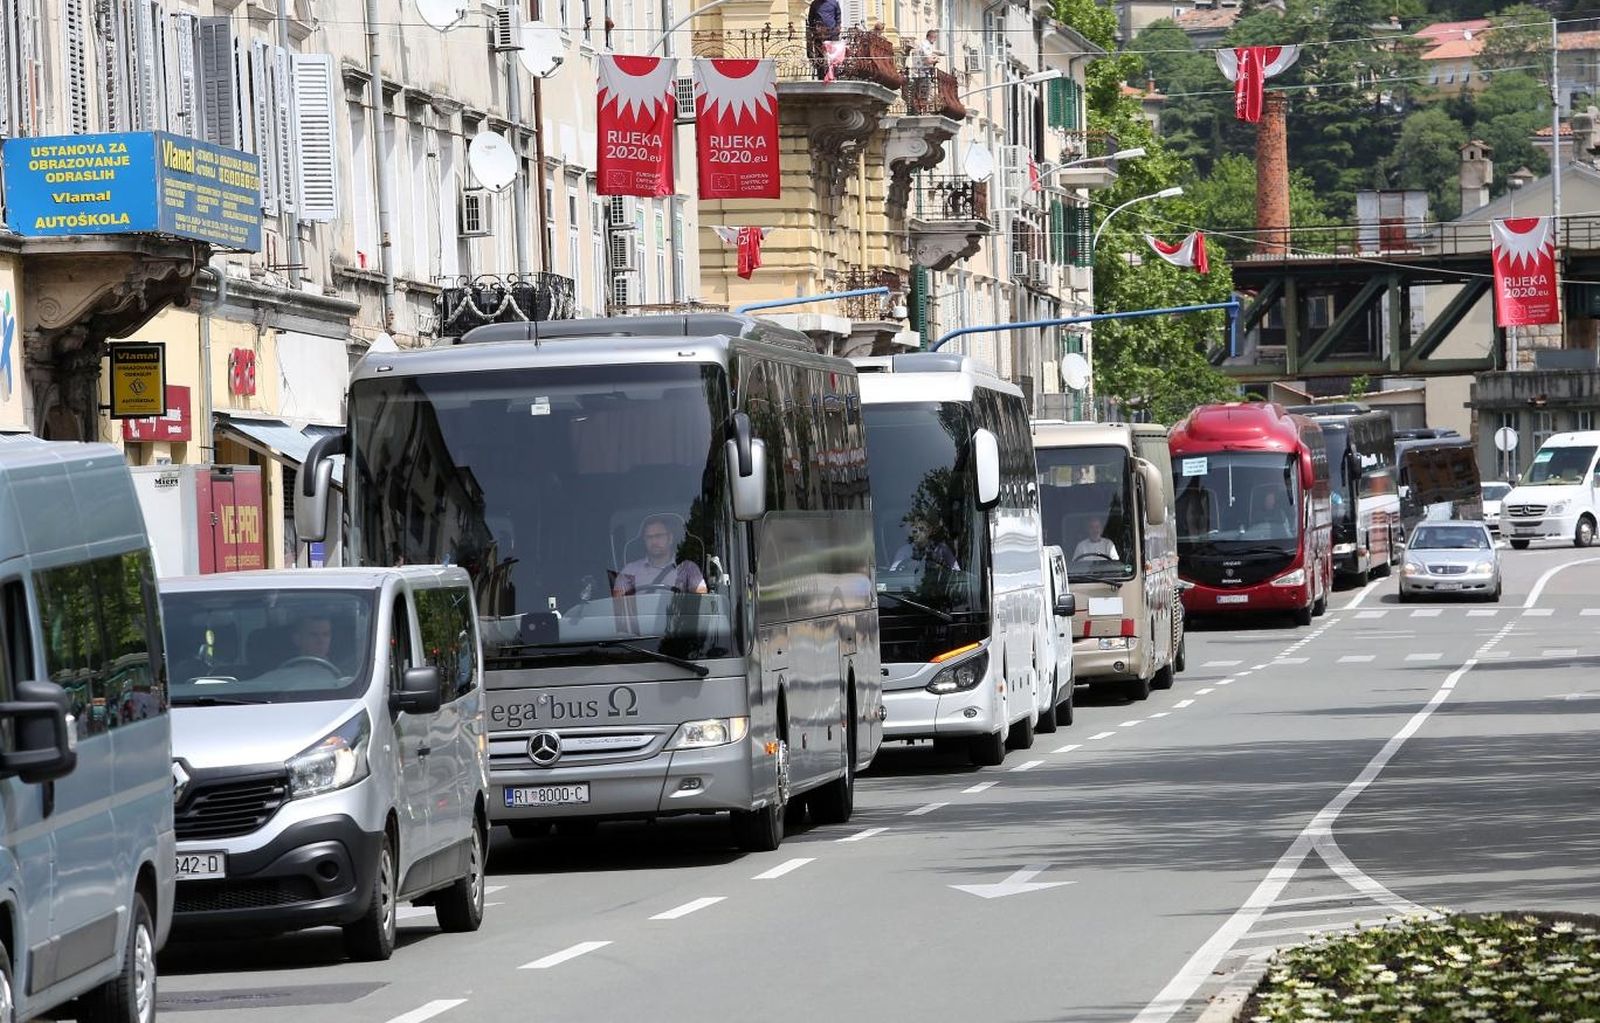 14.05.2020., Rijeka - Prosvjed povremenih prijevoznika autobusa. Kolona vozila u pratnji policije prosla je centrom grada uz trubljenje sirenama.
Photo: Goran Kovacic/PIXSELL